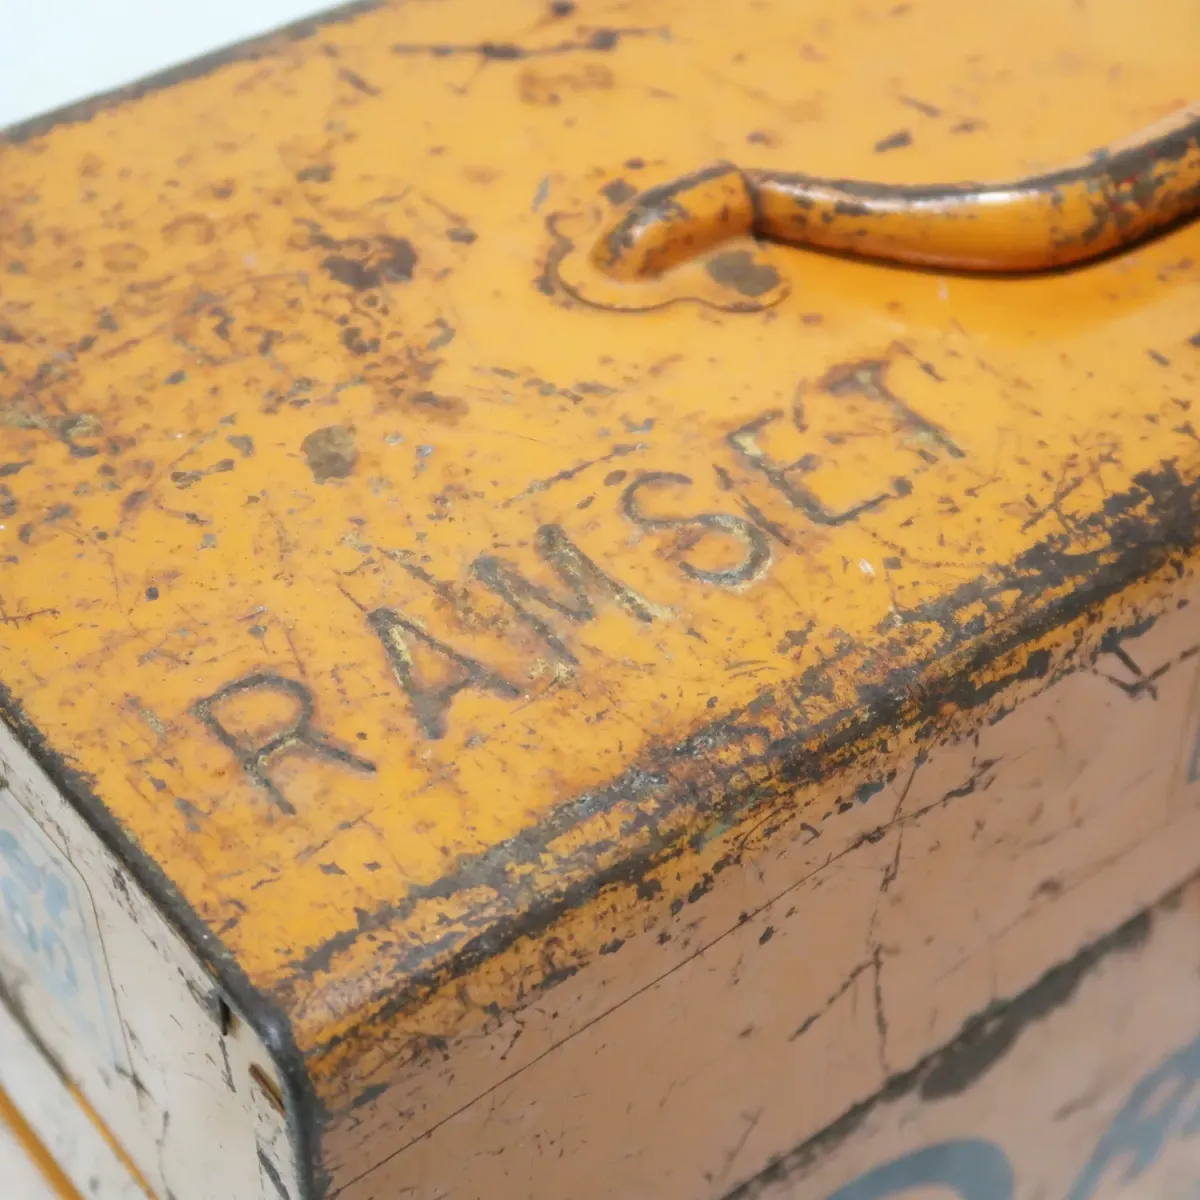 Ramset ビンテージ ツールボックス